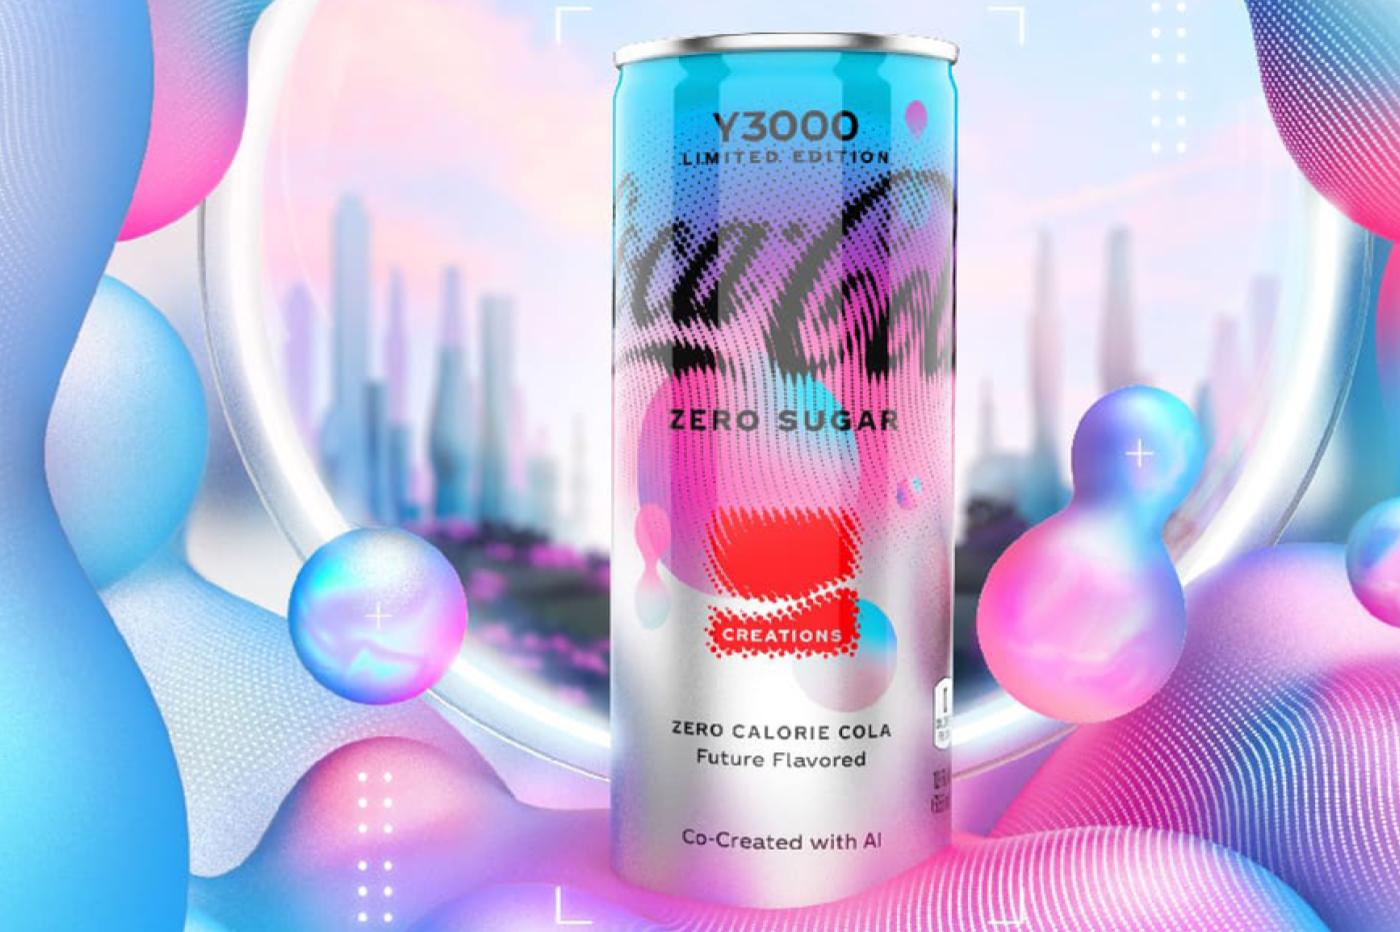 Le Coca-Cola Y3000 Zero, le nouveau soda de la marque